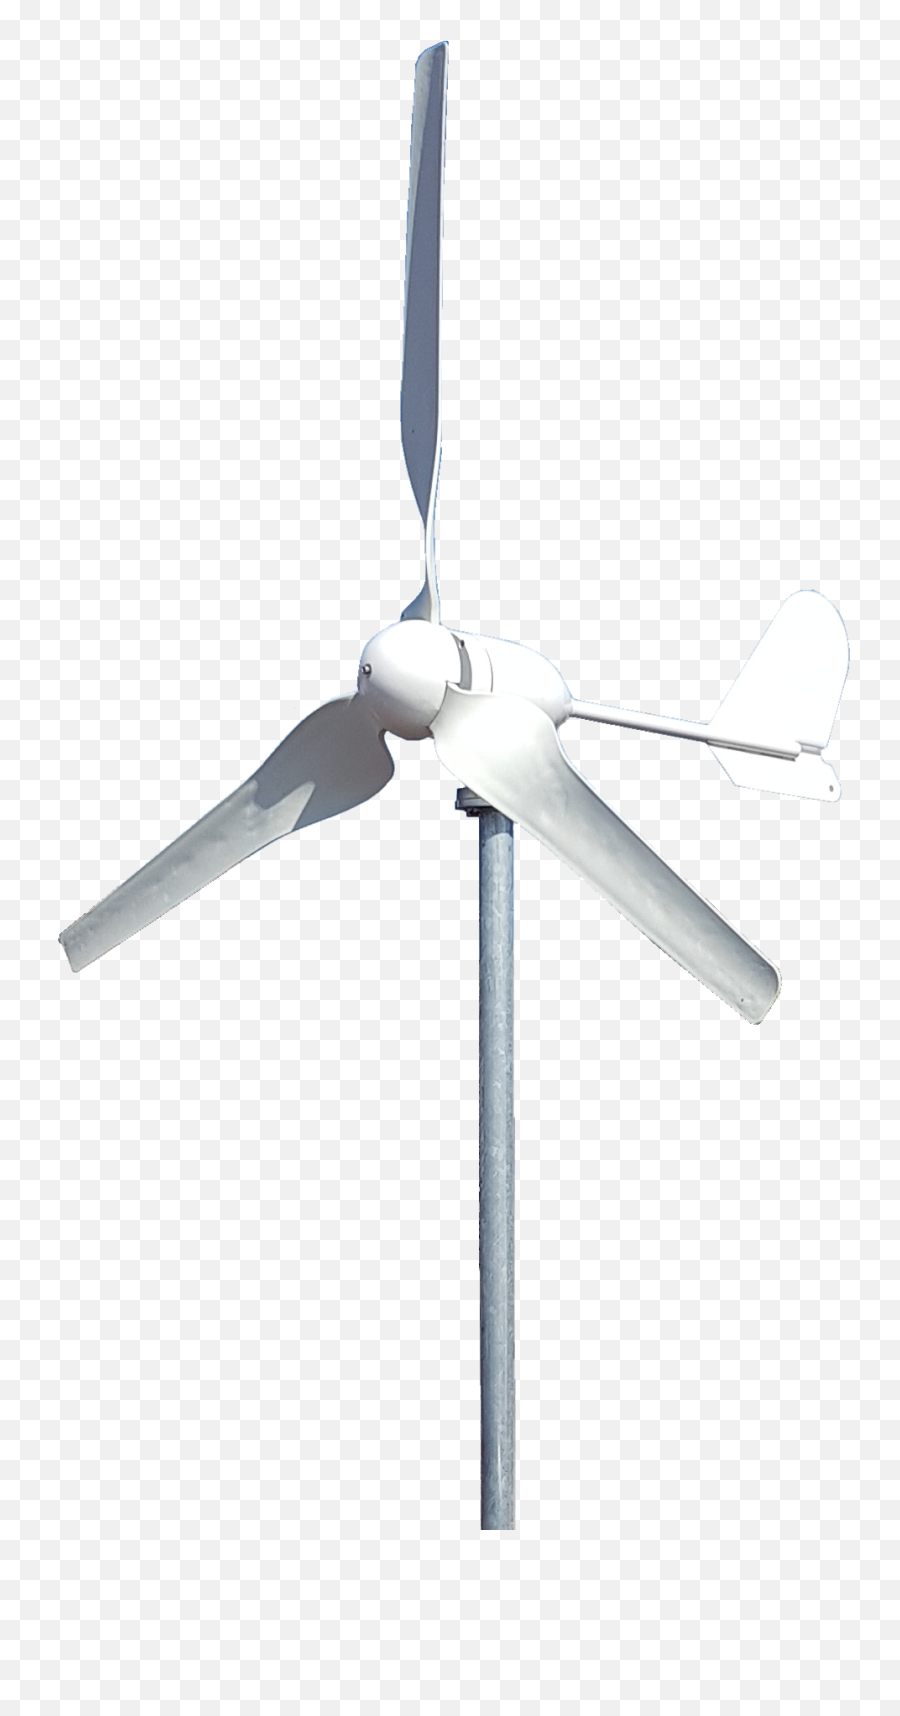 500w Horizontal Axis Turbine - Horizontal Wind Turbine Png Transparent,Wind Turbine Png